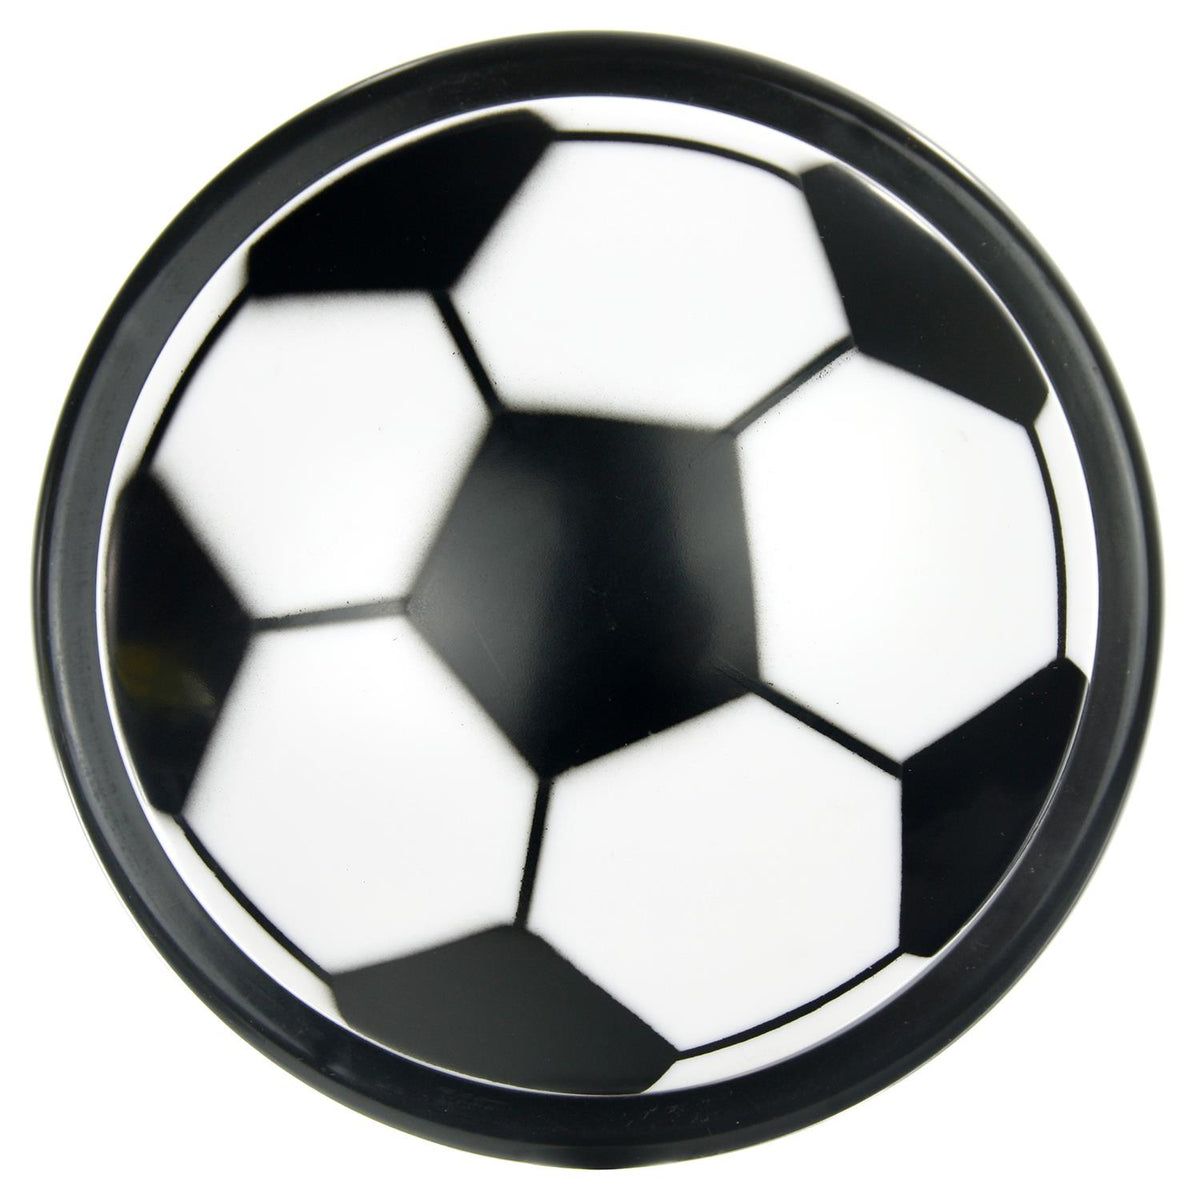 Sunlite Soccerball Pushlite Night Light